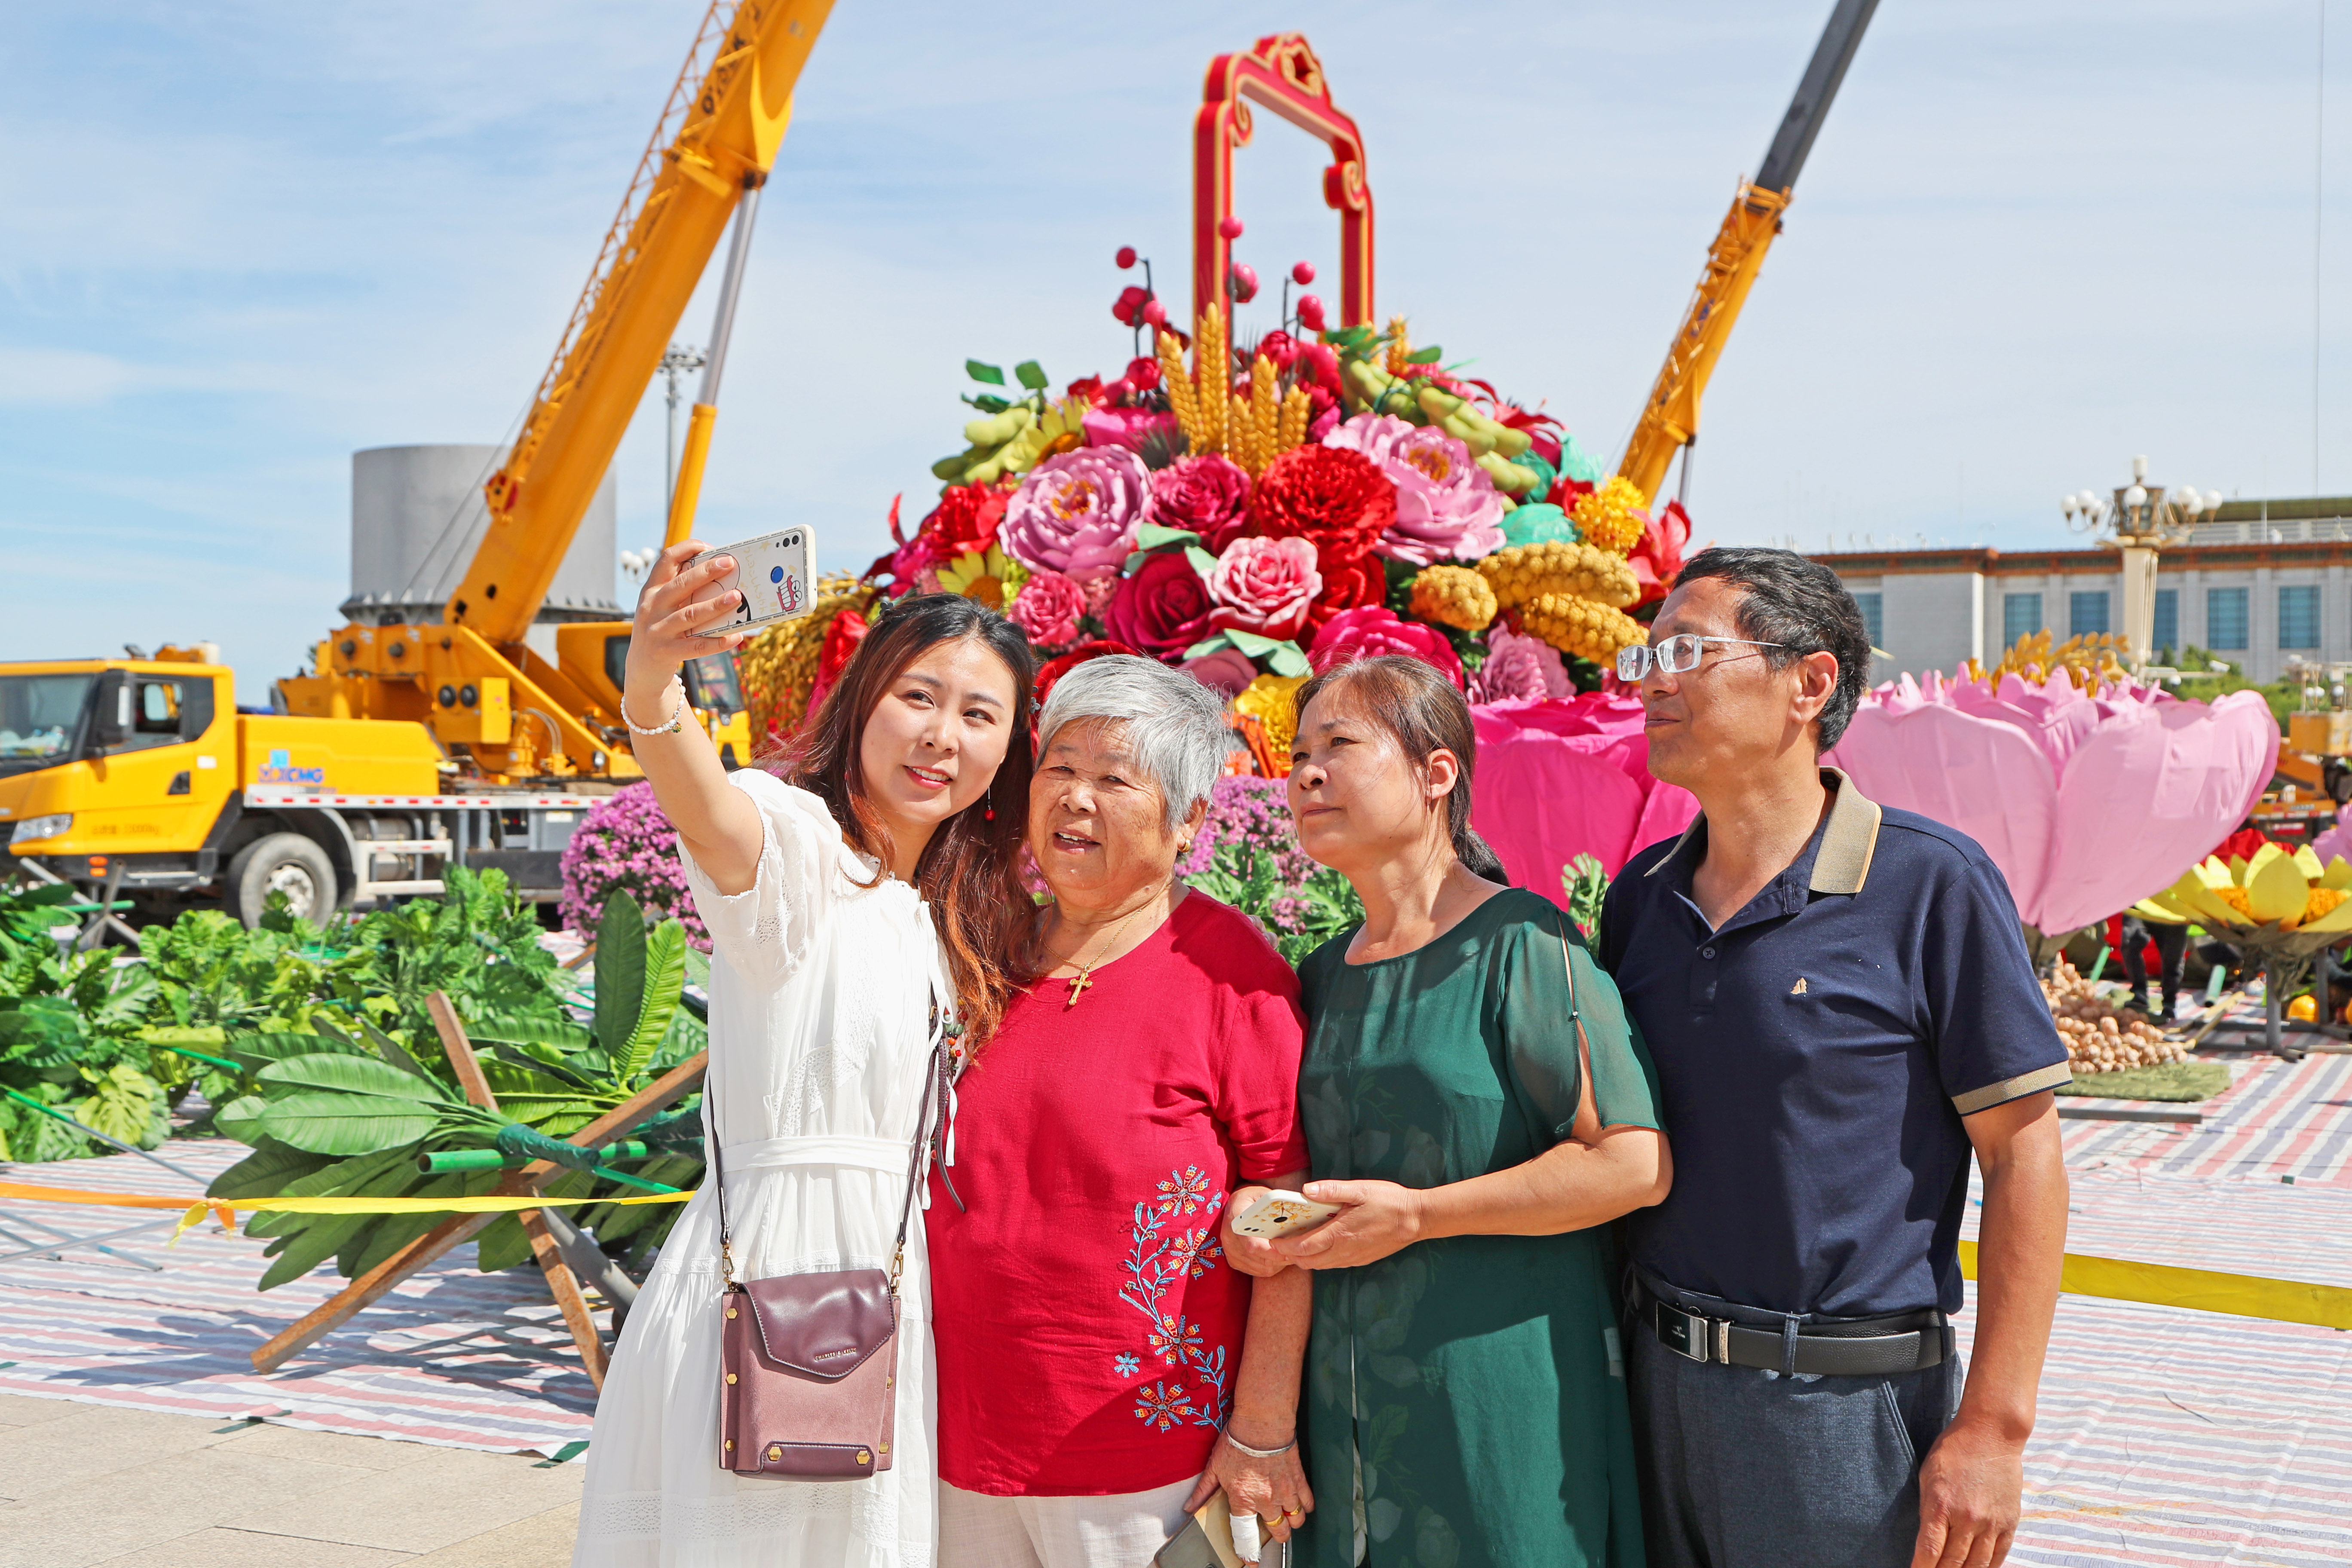 天安门广场节日氛围渐浓 吸引游客提前打卡